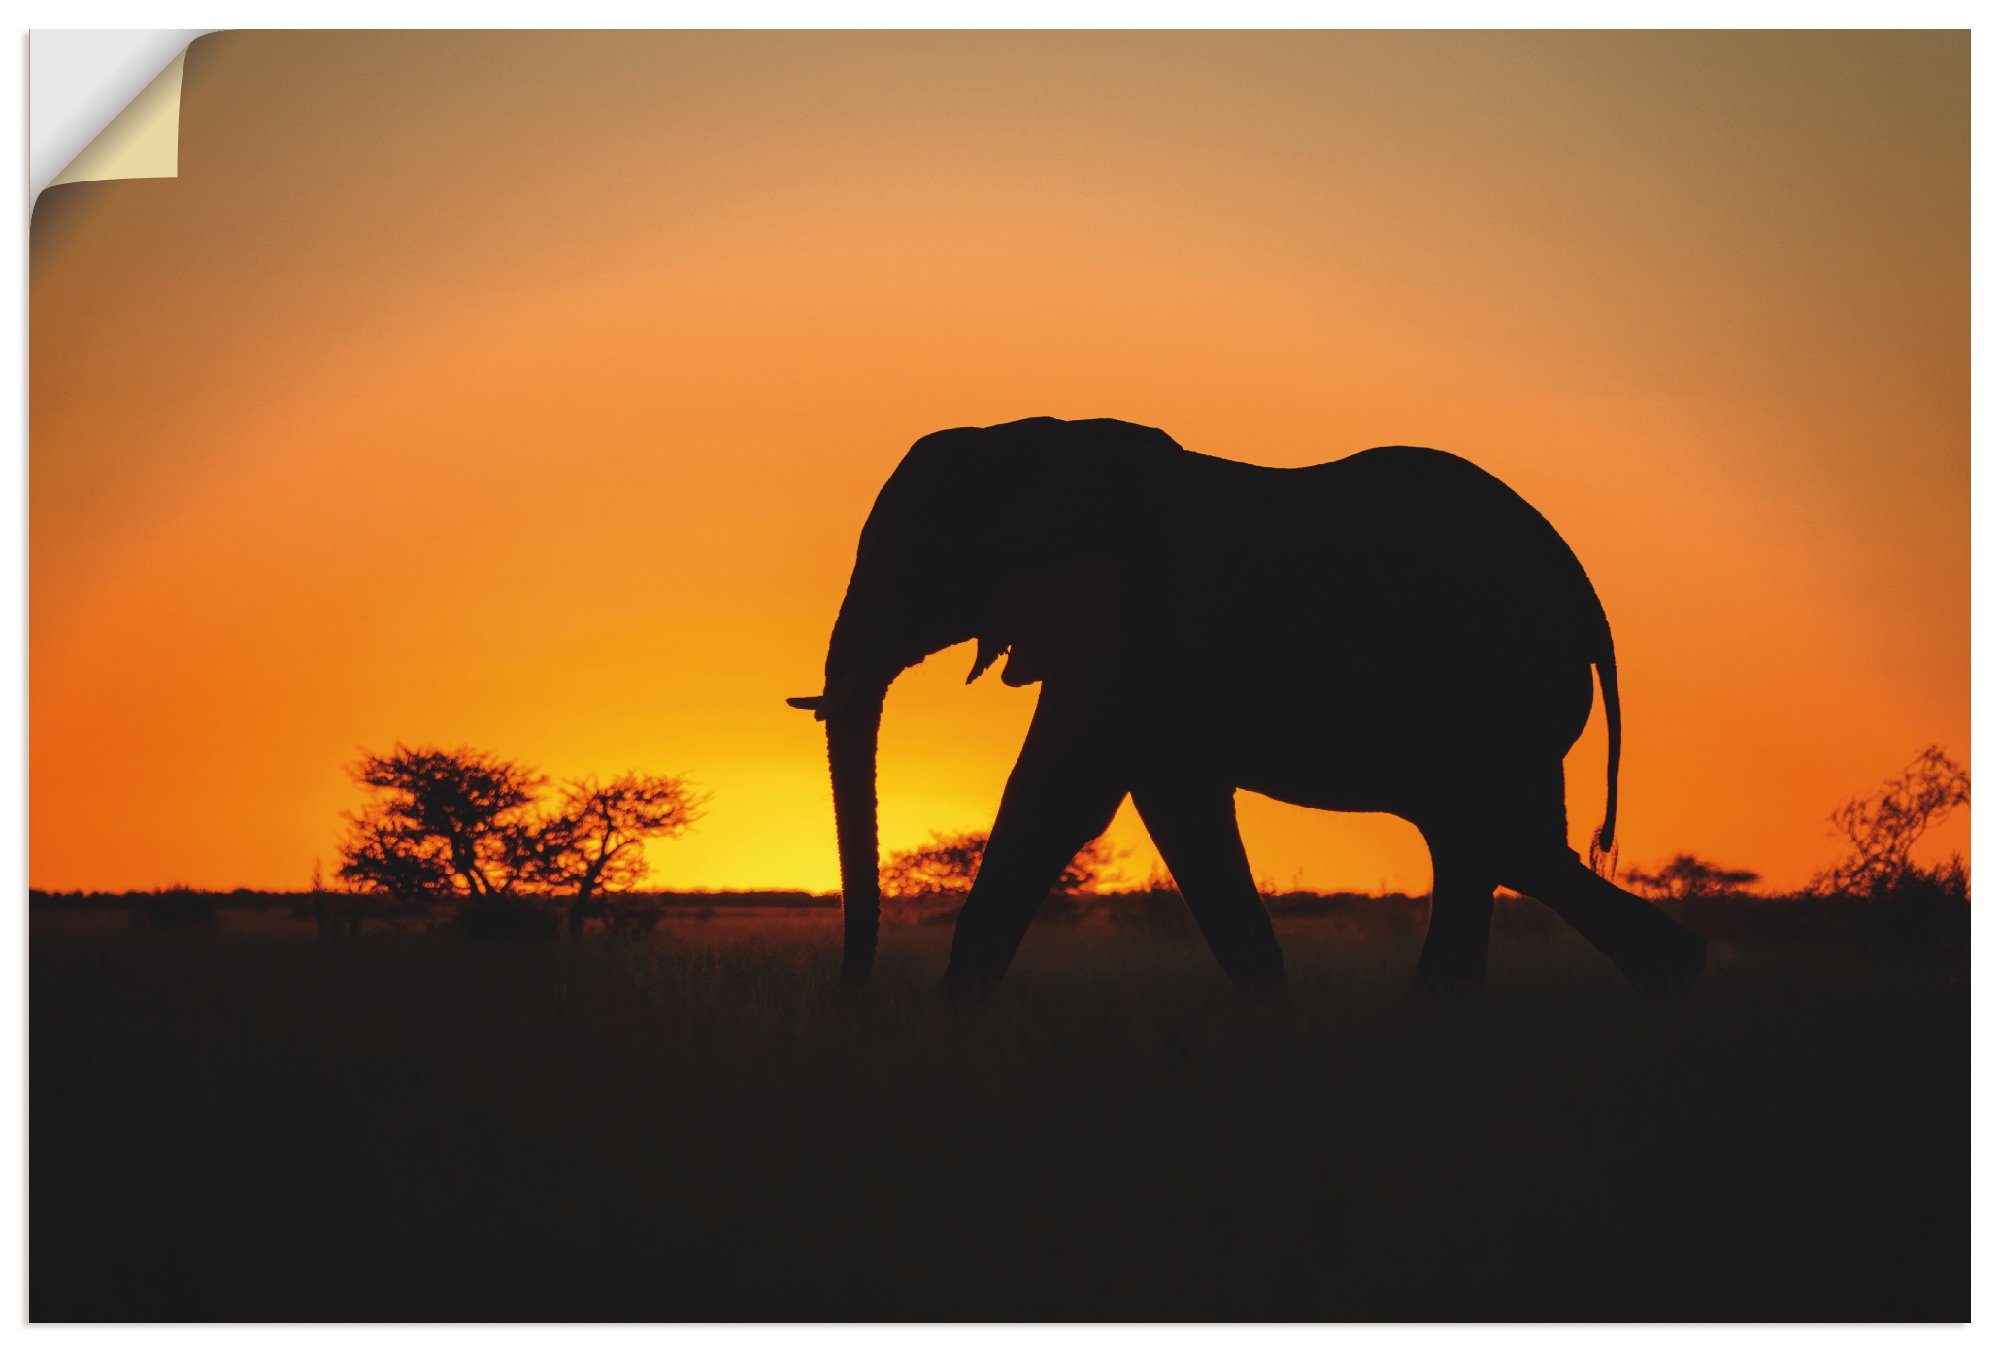 Artland Artprint Afrikaanse olifant bij zonsondergang in vele afmetingen & productsoorten - artprint van aluminium / artprint voor buiten, artprint op linnen, poster, muursticker /